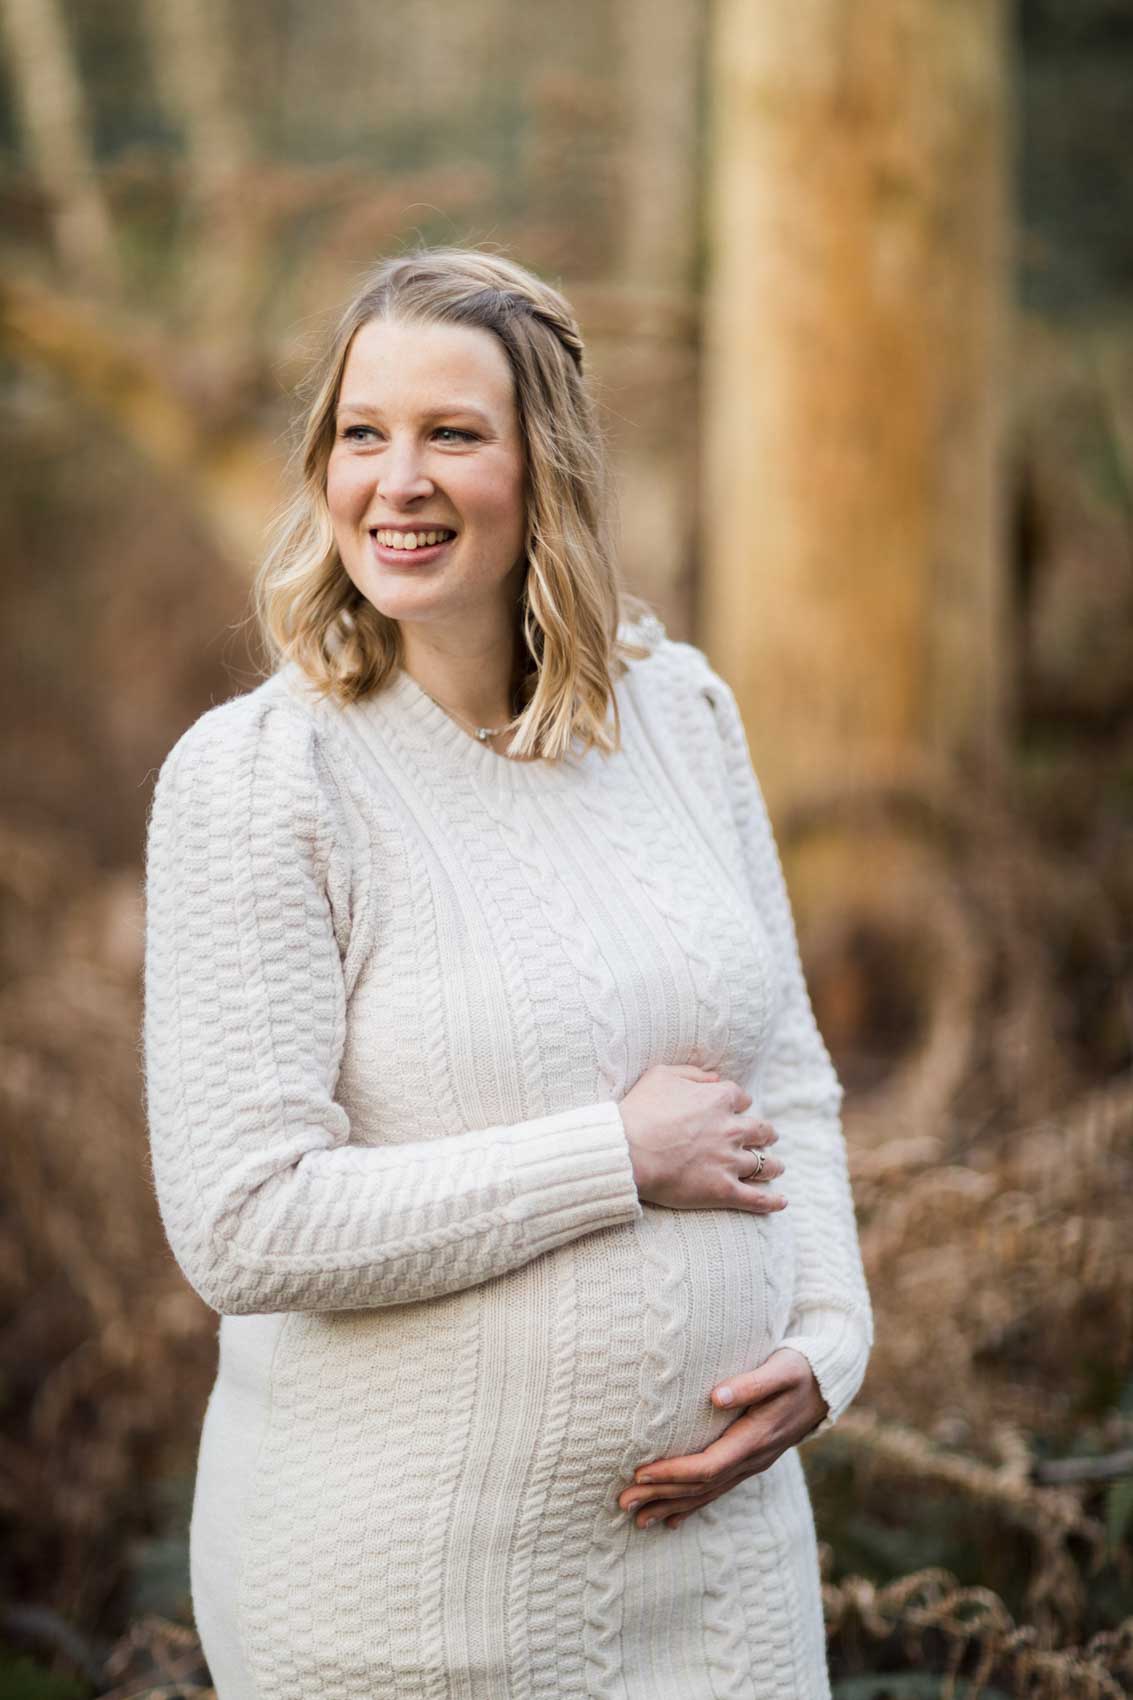 Portraitfoto einer schwangeren Frau in einem wollweißen Strickkleid mit Zopfmuster. Die Frau hat beide Hände auf den Bauch gelegt.